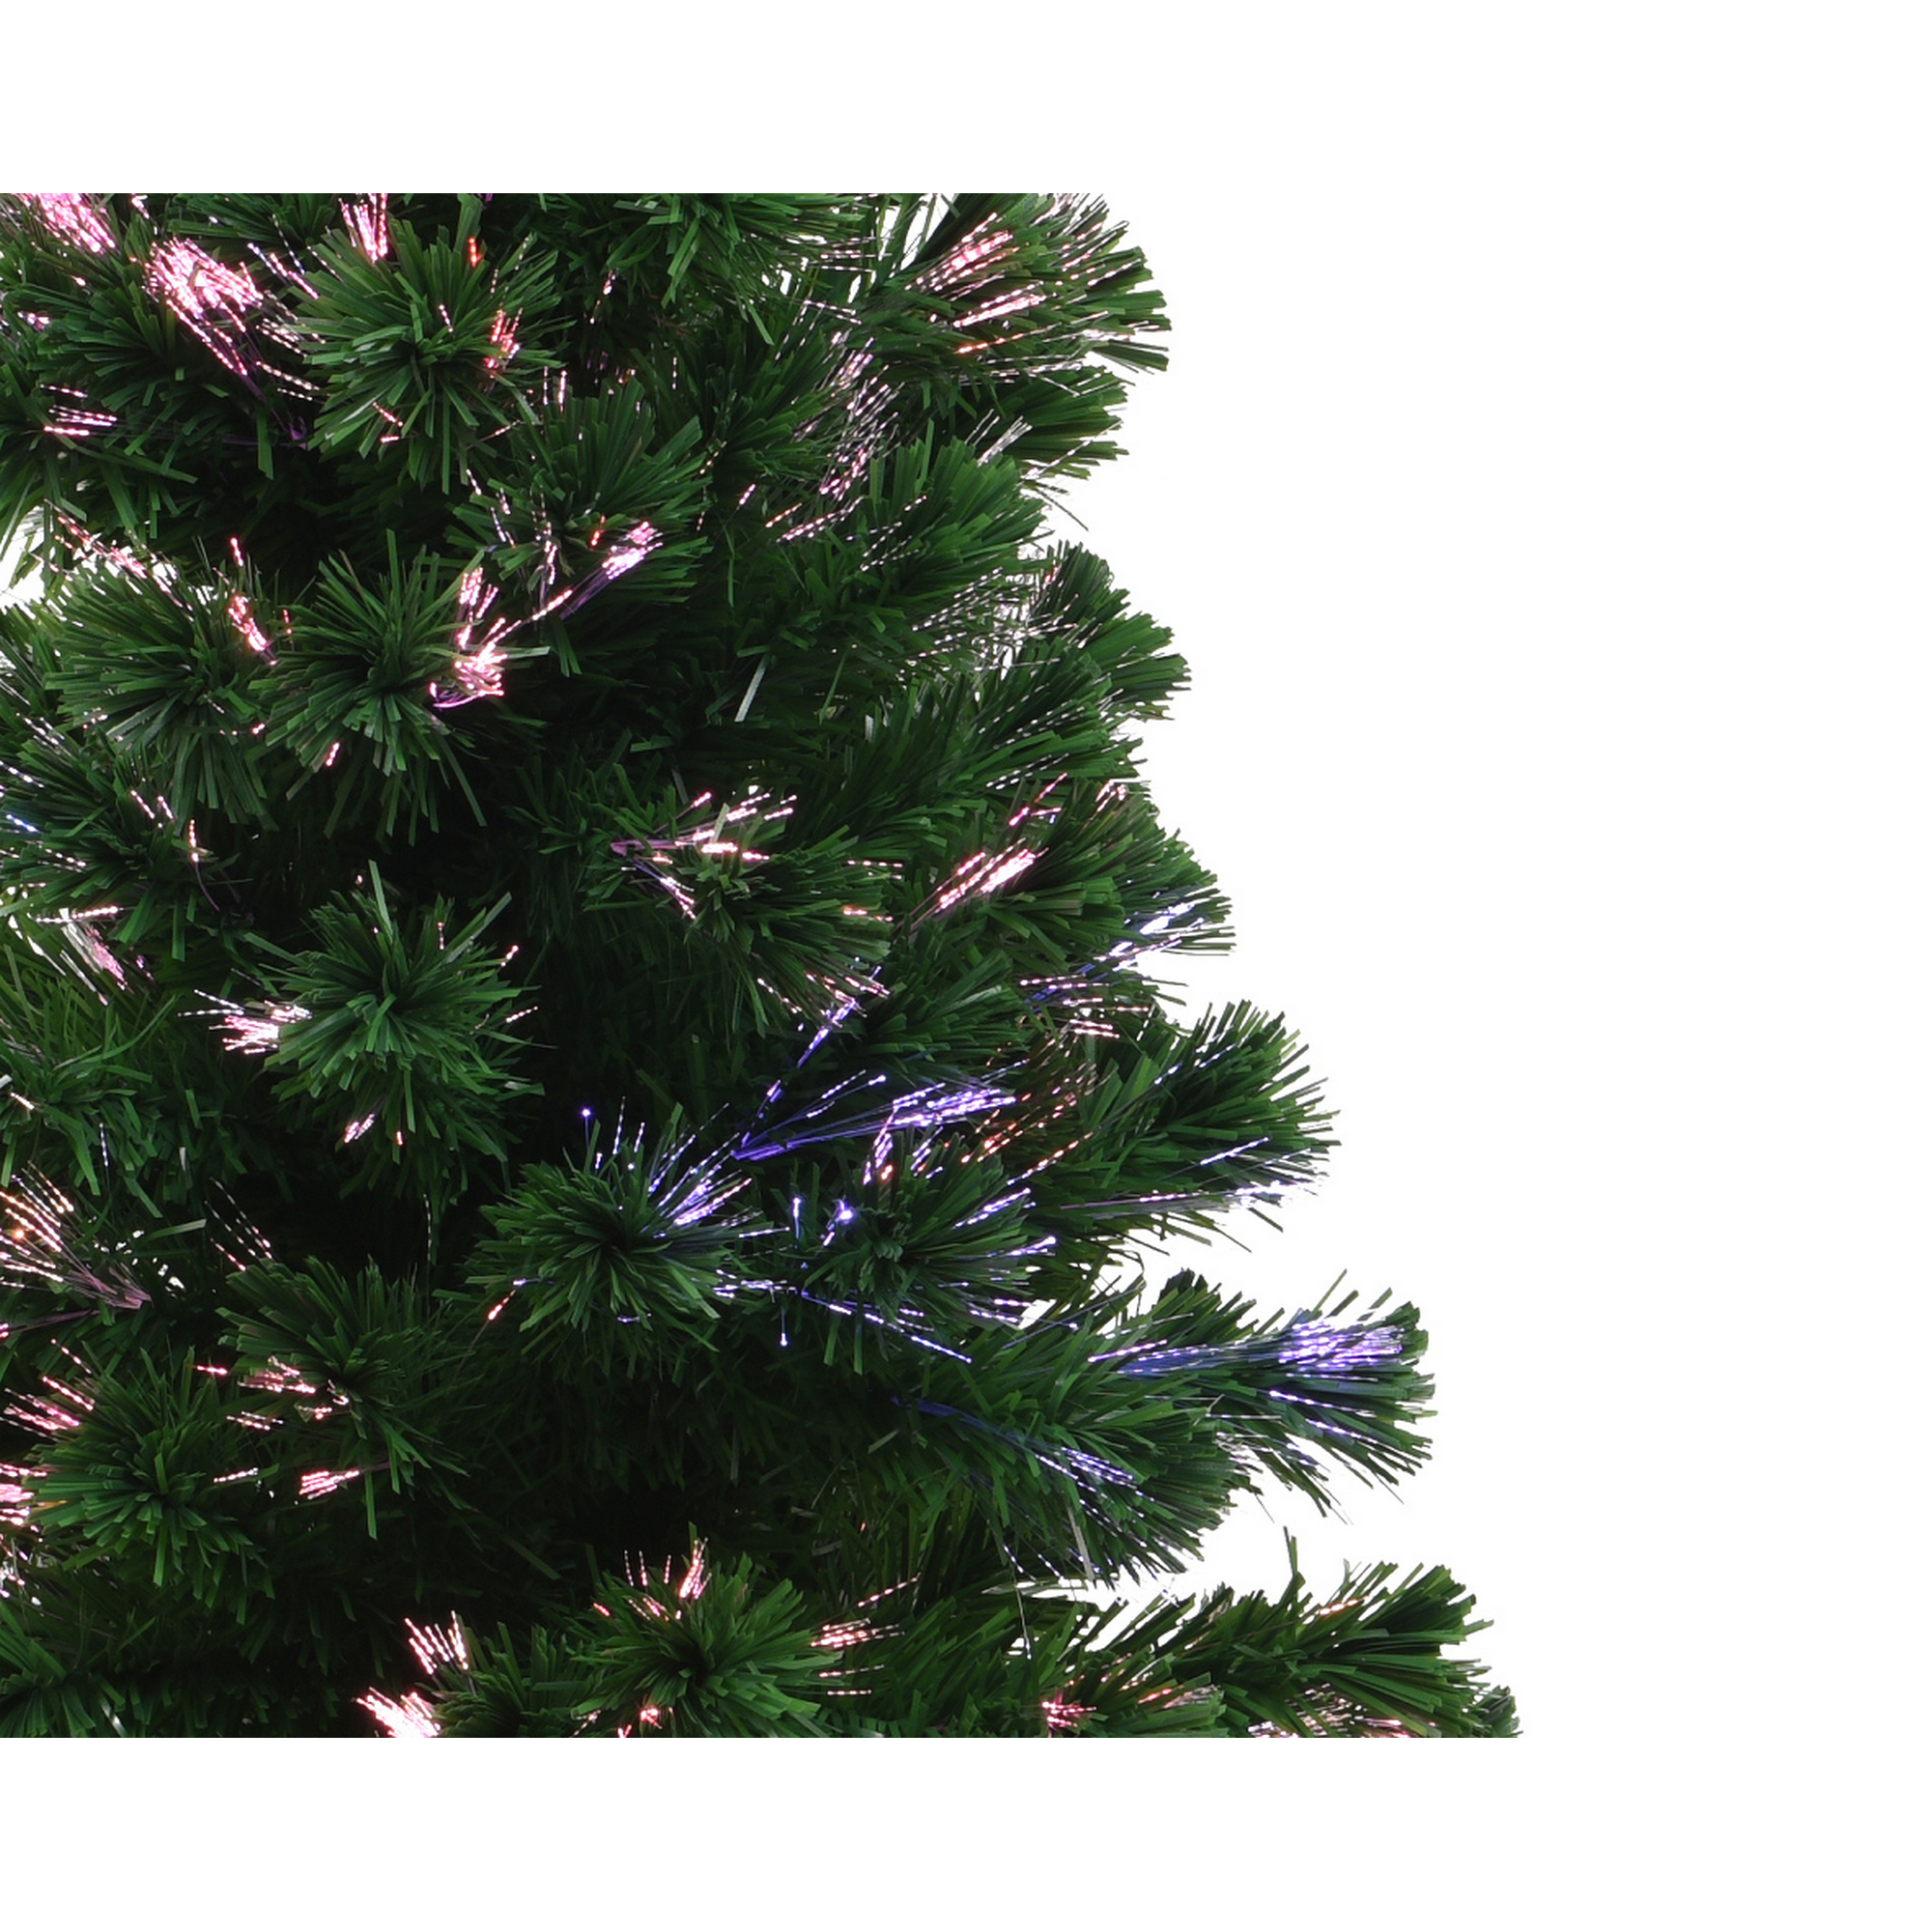 Künstlicher Weihnachtsbaum 'Burtley' grün 120 cm, mit LED-Beleuchtung + product picture